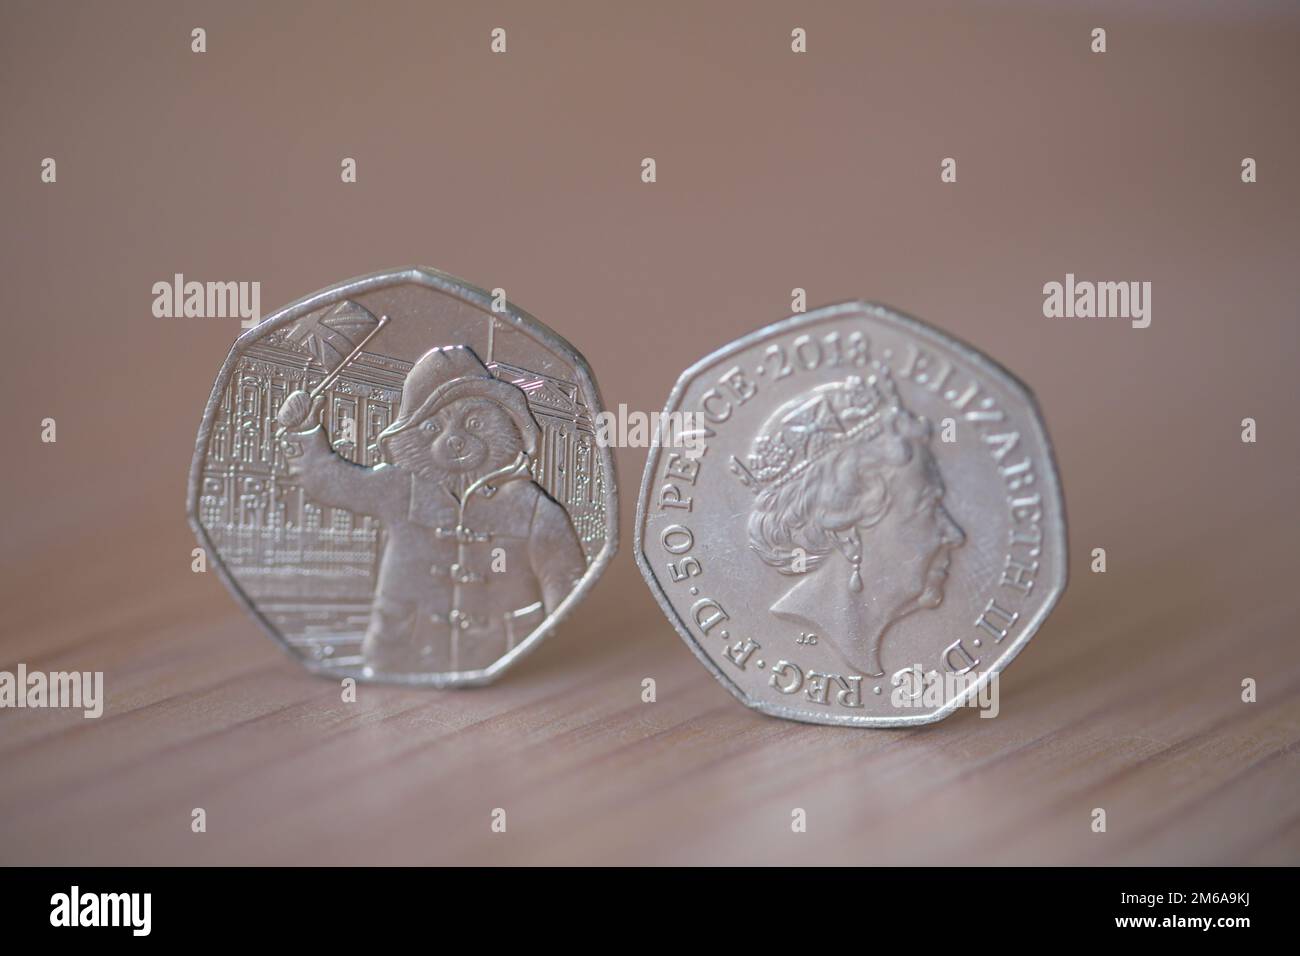 Deux pièces de 50p avec la reine Elizabeth II et l'ours Paddington qui agite un drapeau Banque D'Images